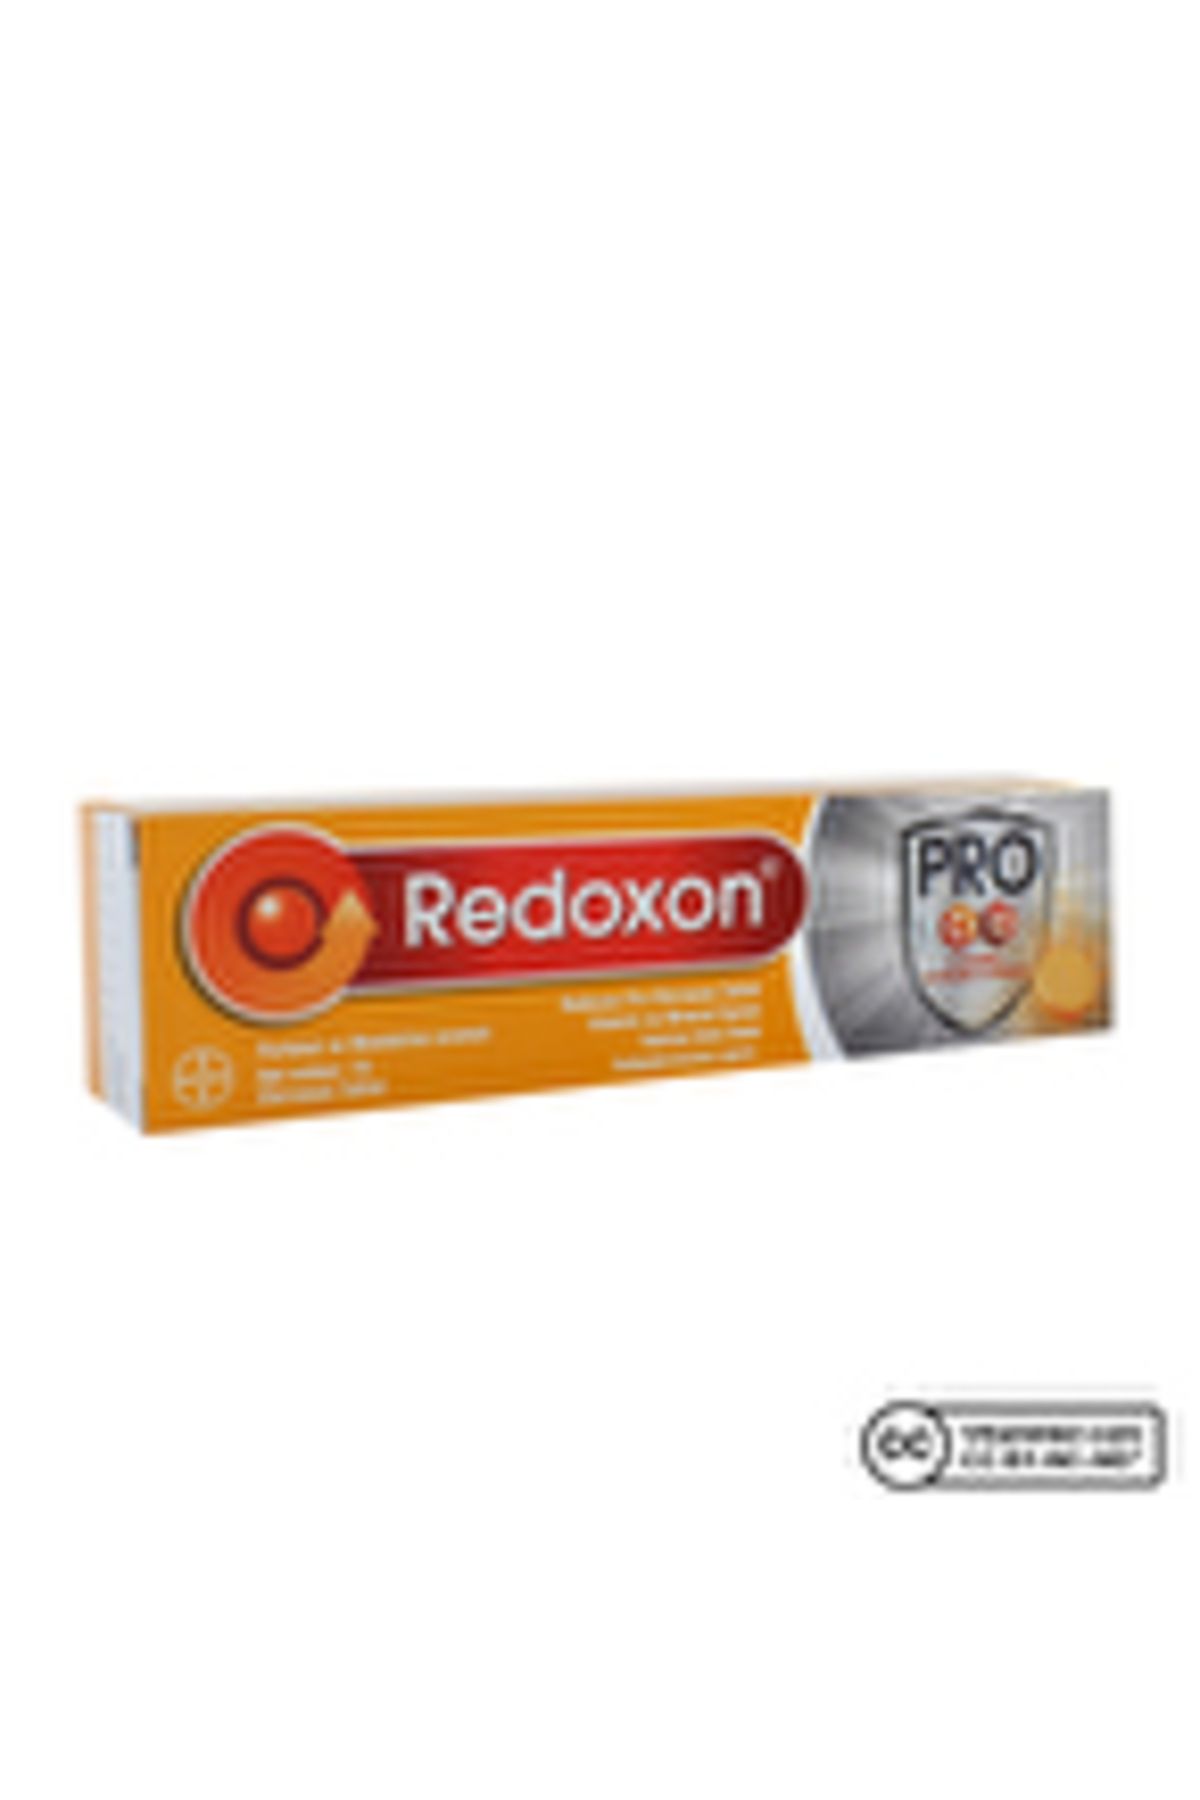 Redoxon Pro 15 Efervesan Tablet ( 1 ADET )